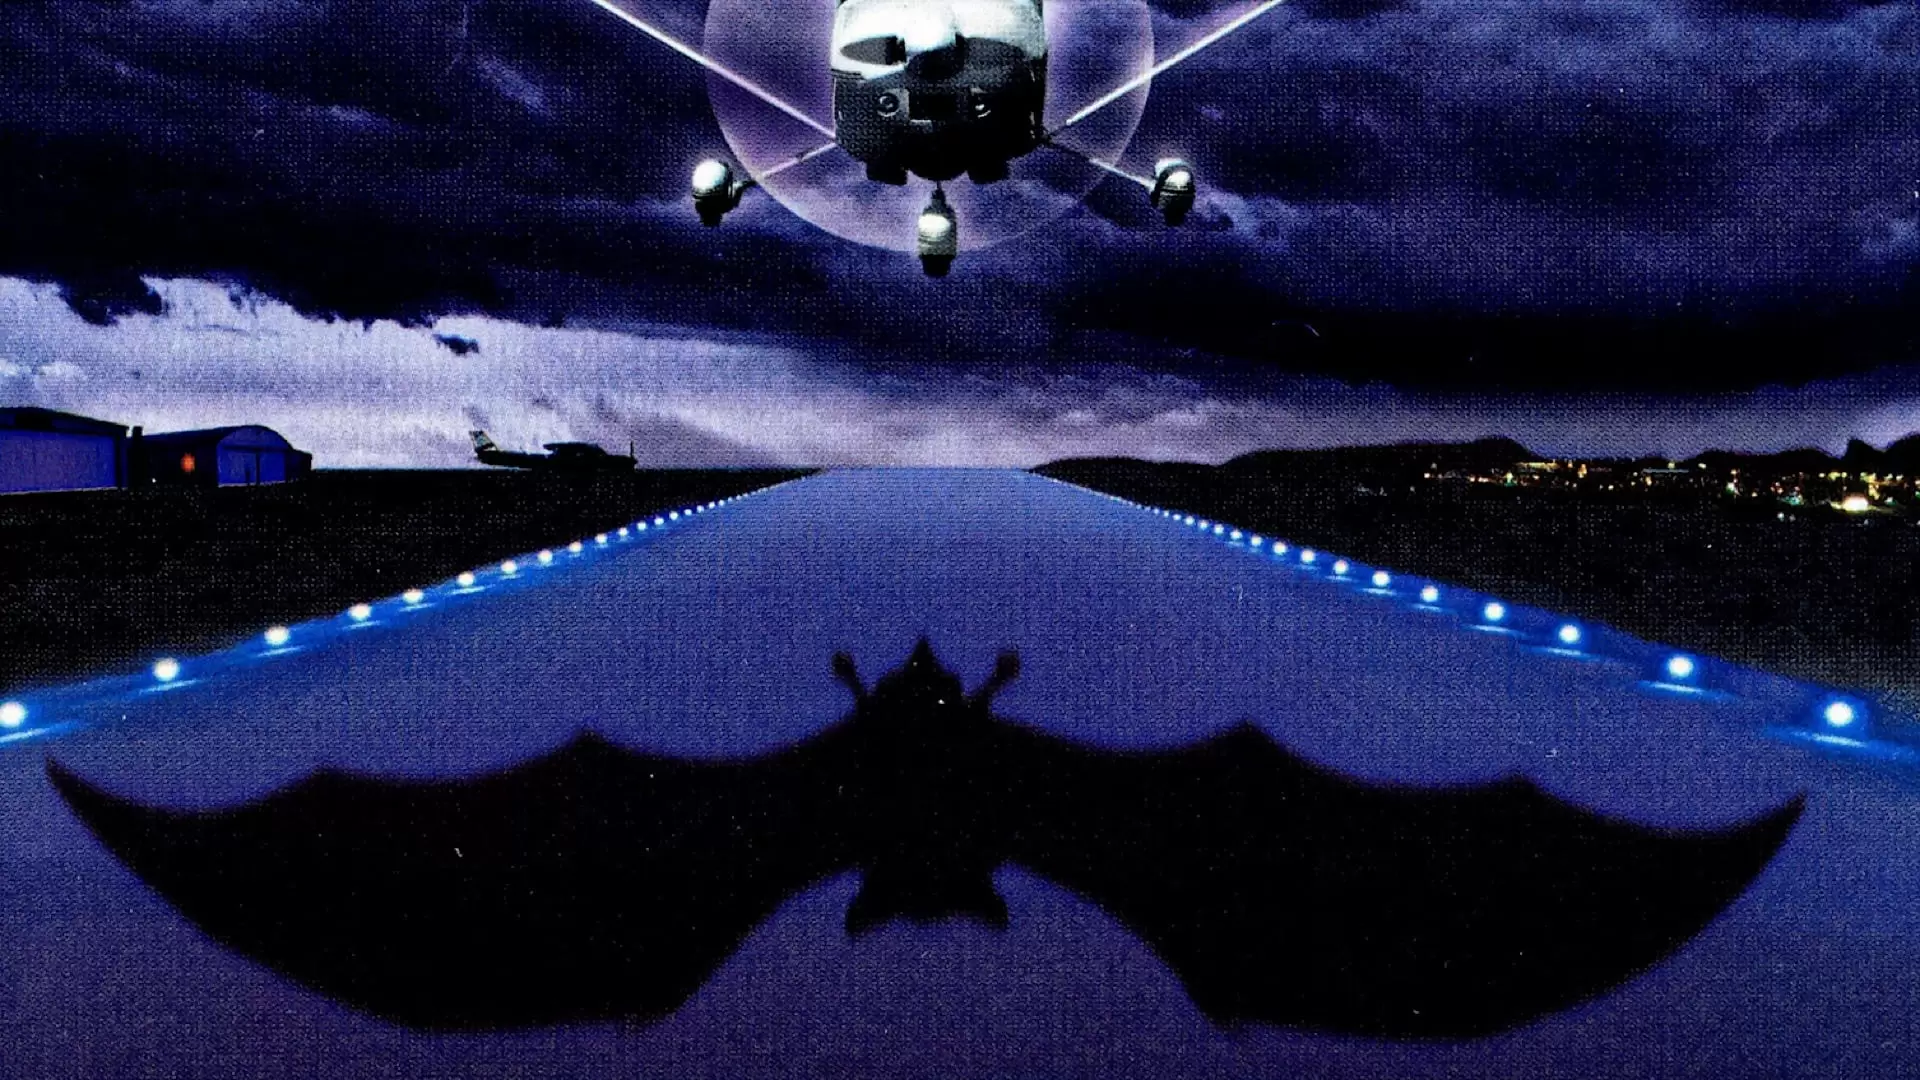 دانلود فیلم The Night Flier 1997